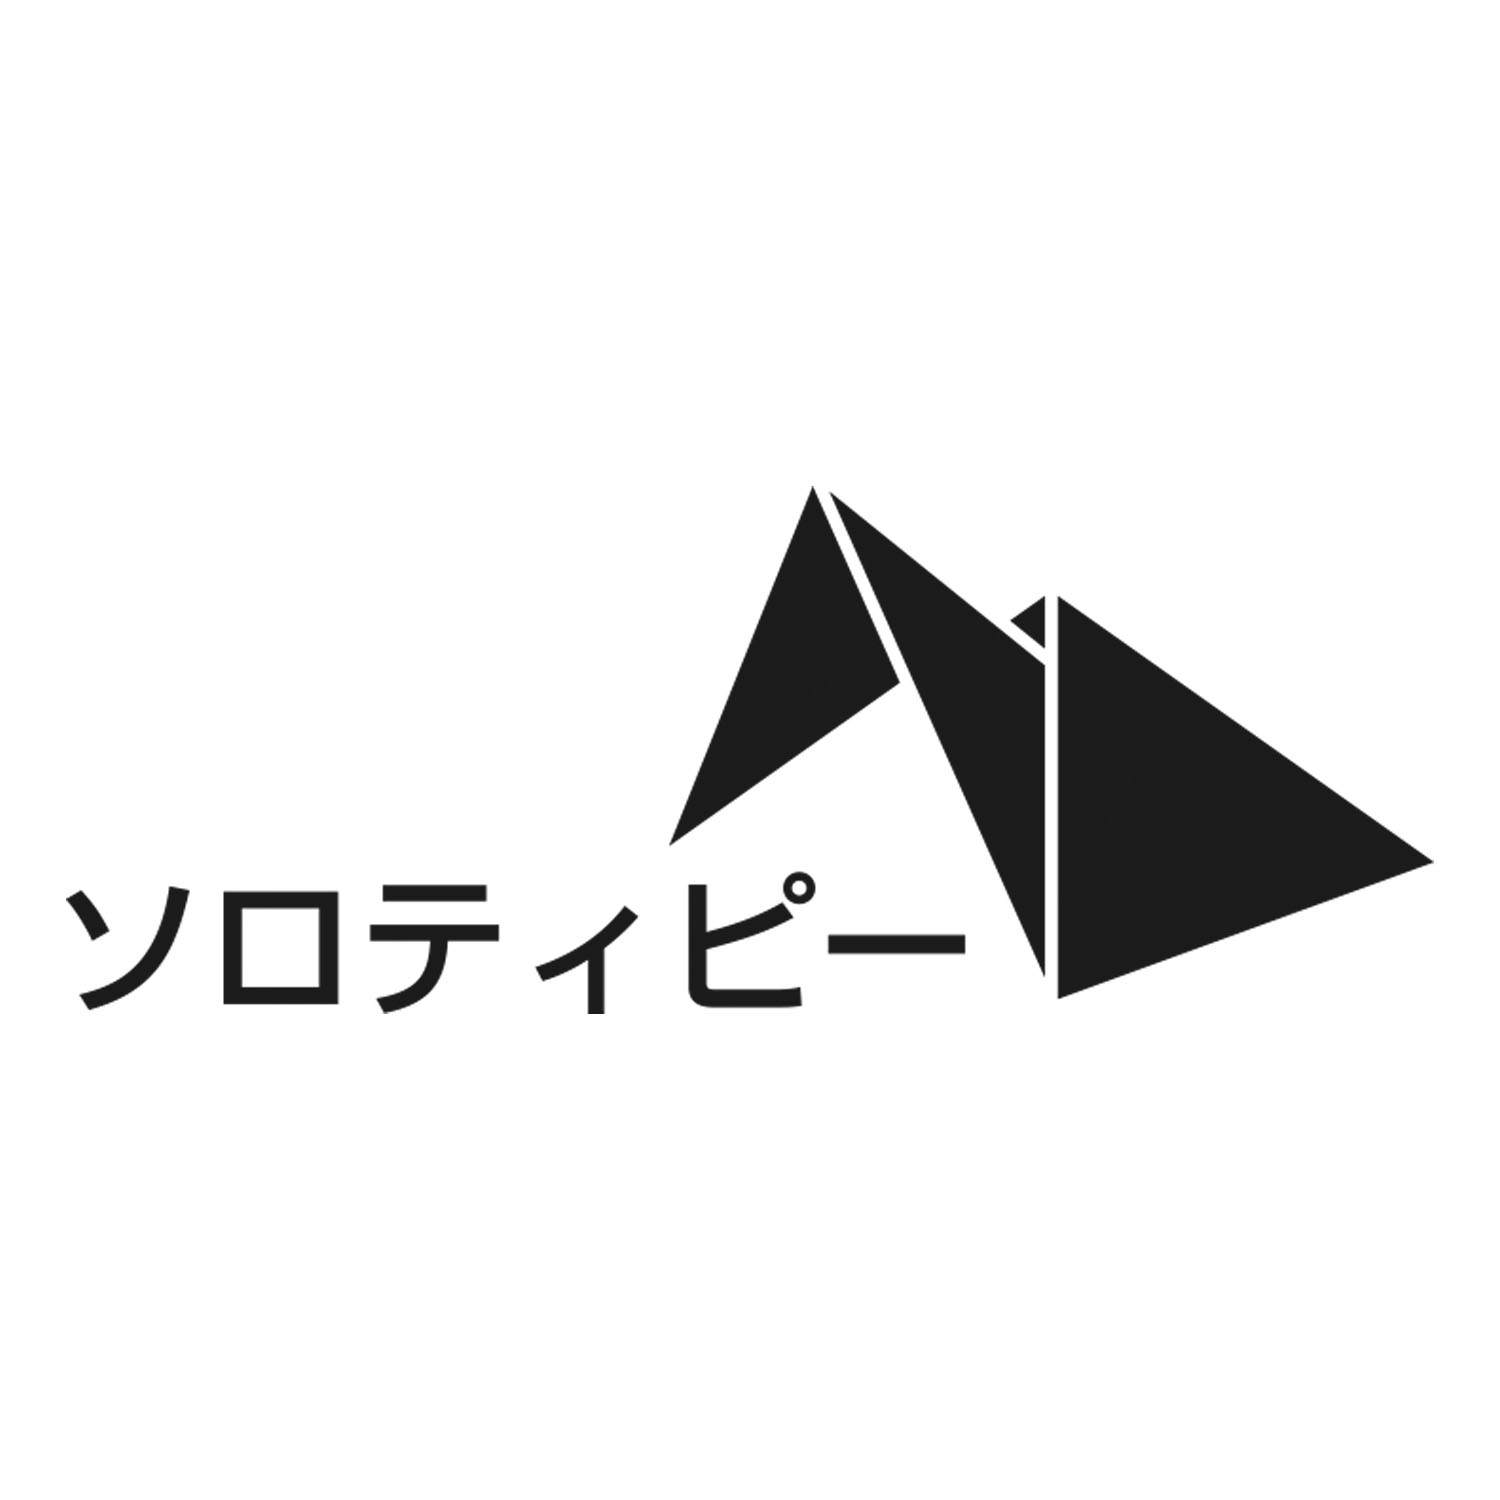 ソロティピー【テント・タープ】 | 株式会社カワセ